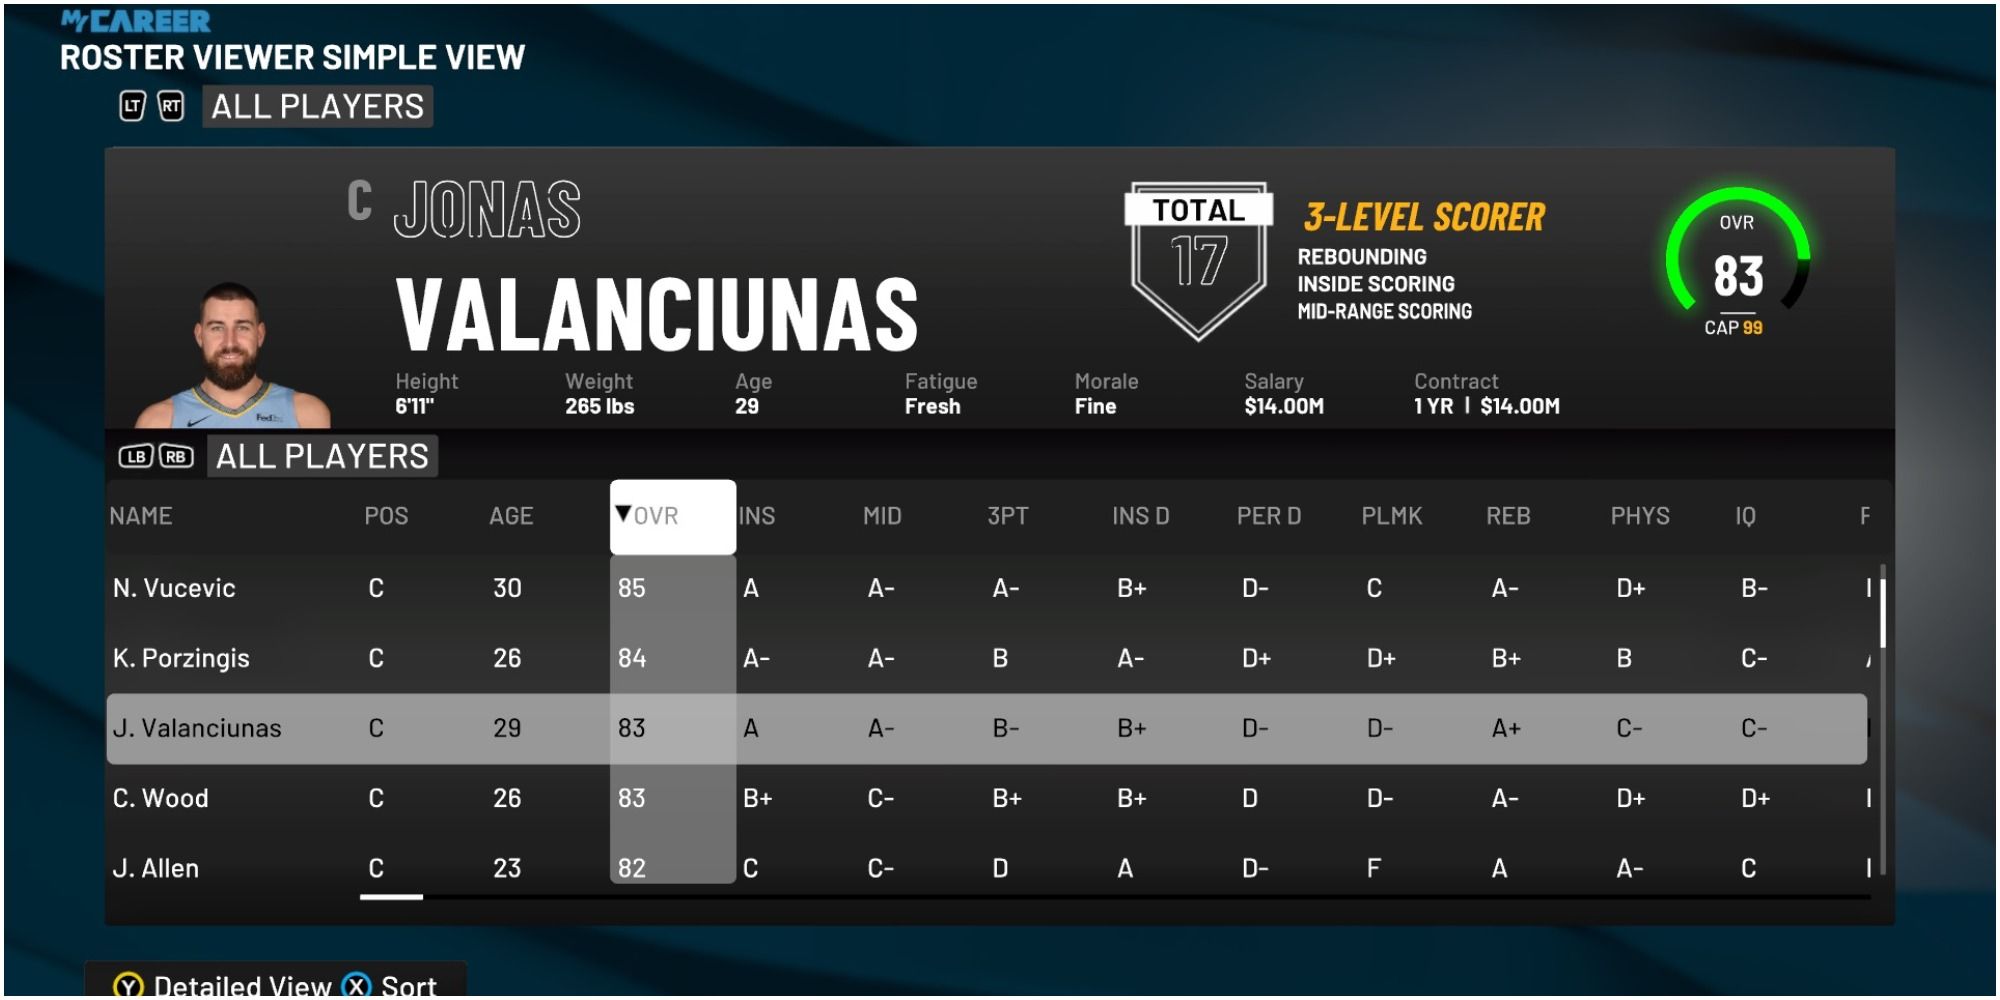 Рейтинг Йонаса Валанчунаса в NBA 2K22 по сравнению с другими центровыми